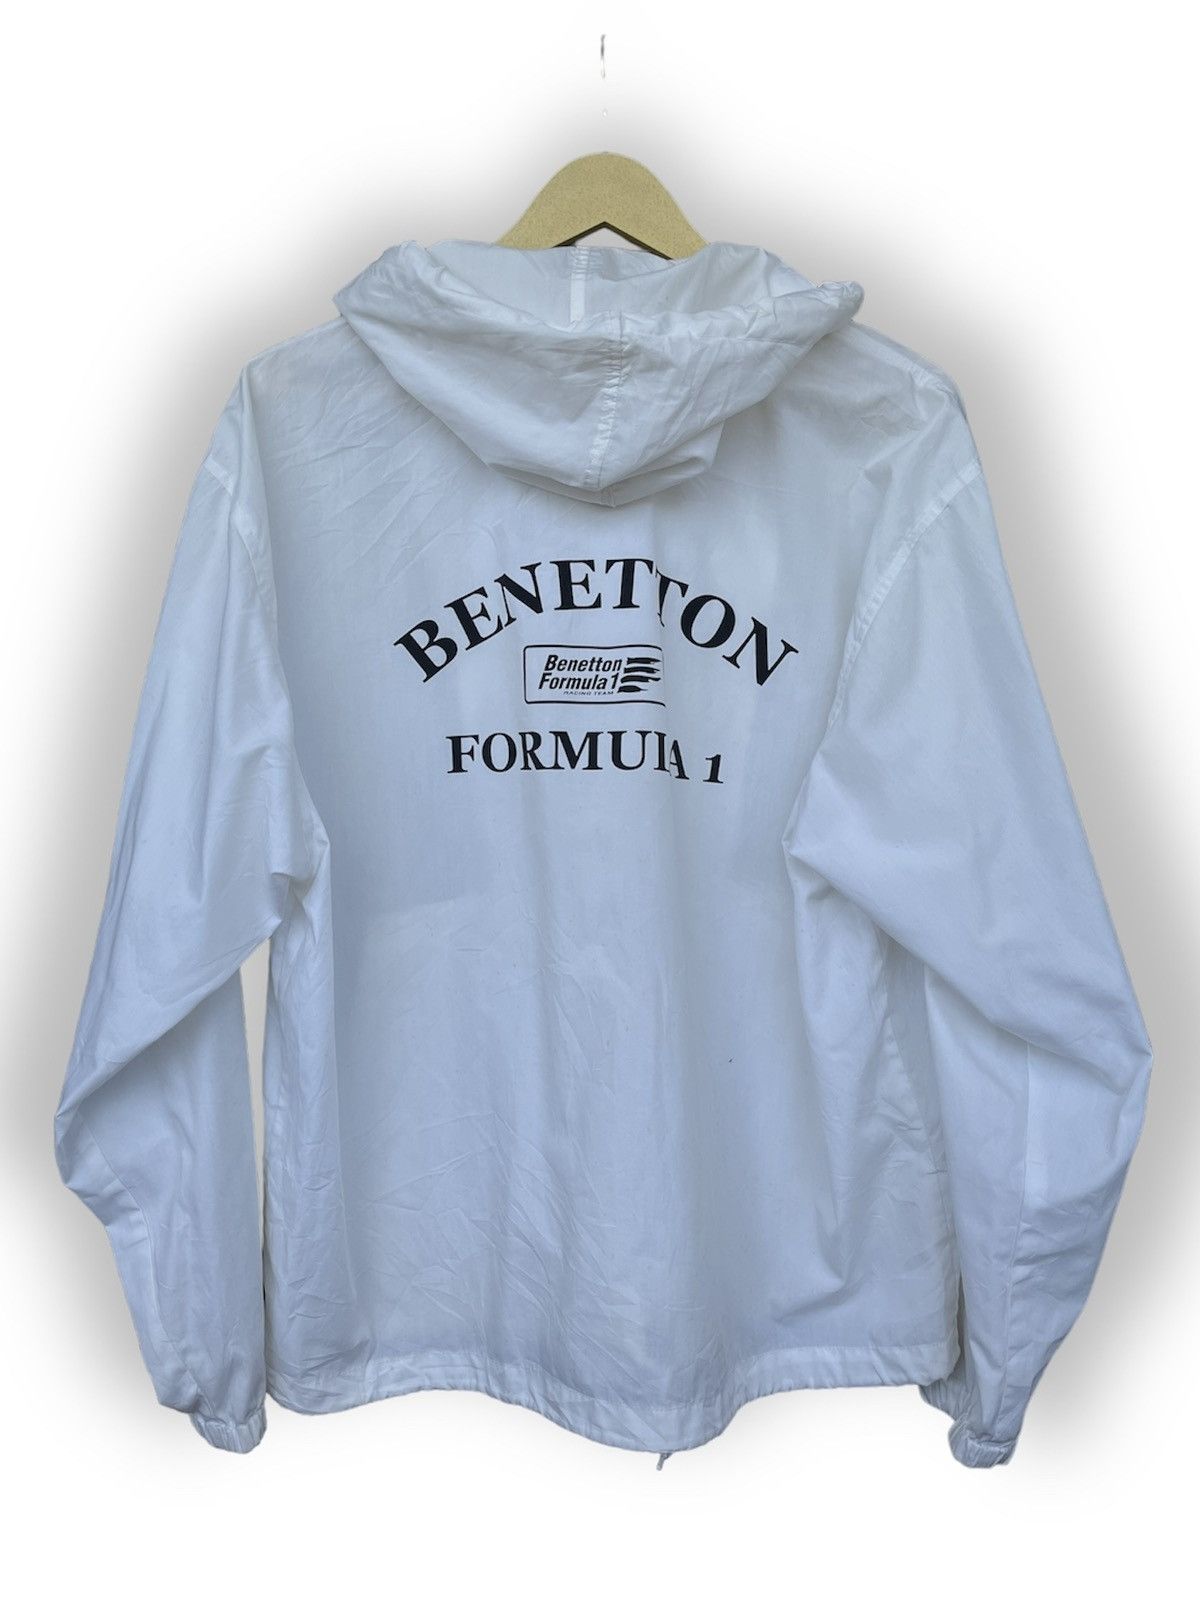 Vintage Benetton Formula 1 Printed Windbreaker Hoodie - 1